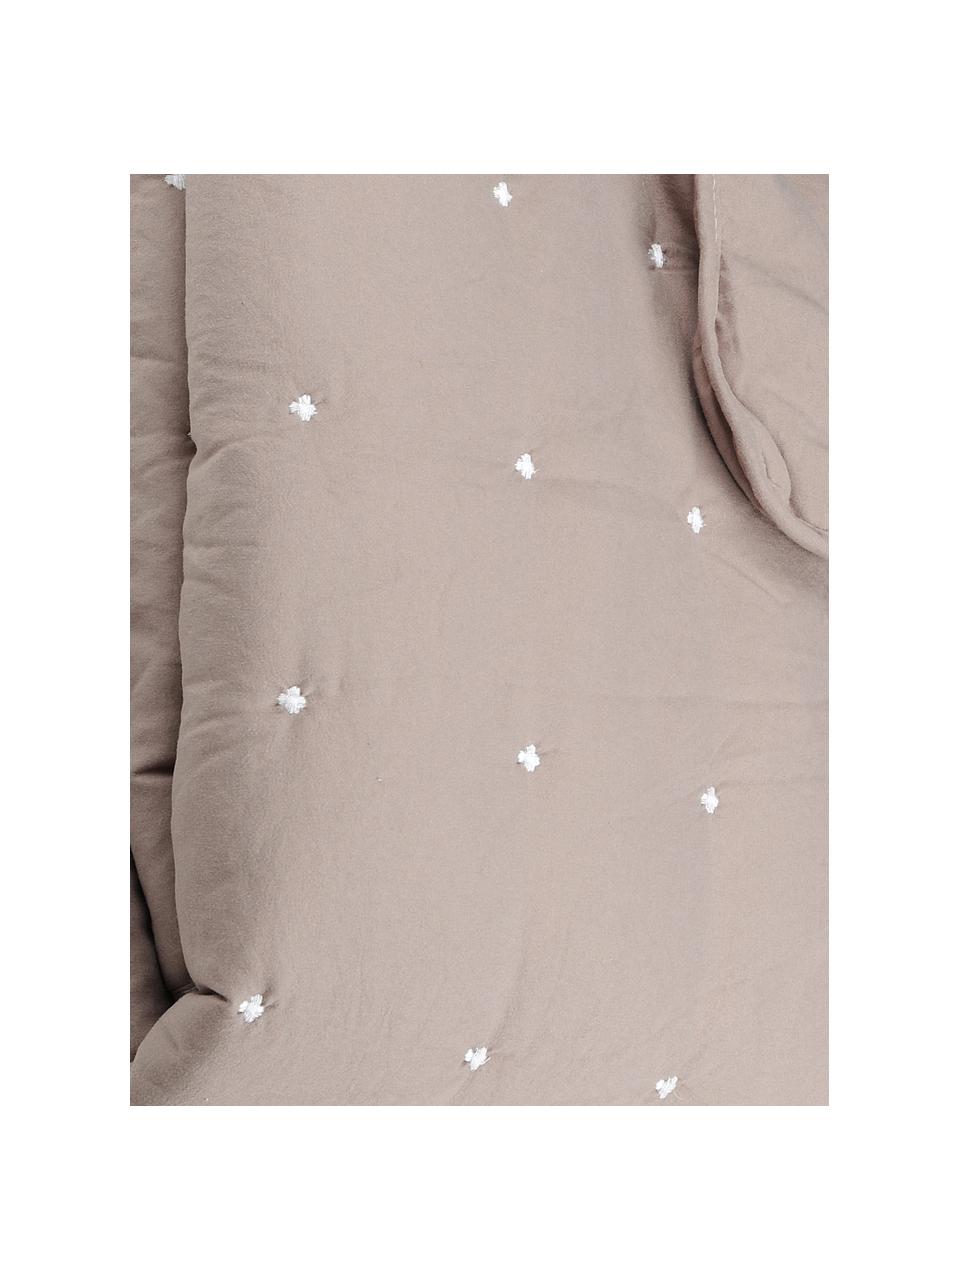 Tagesdecke Honorine mit bestickten Punkten, 100% Polyester, Taupe, B 220 x L 240 cm (für Betten ab 160 x 200)